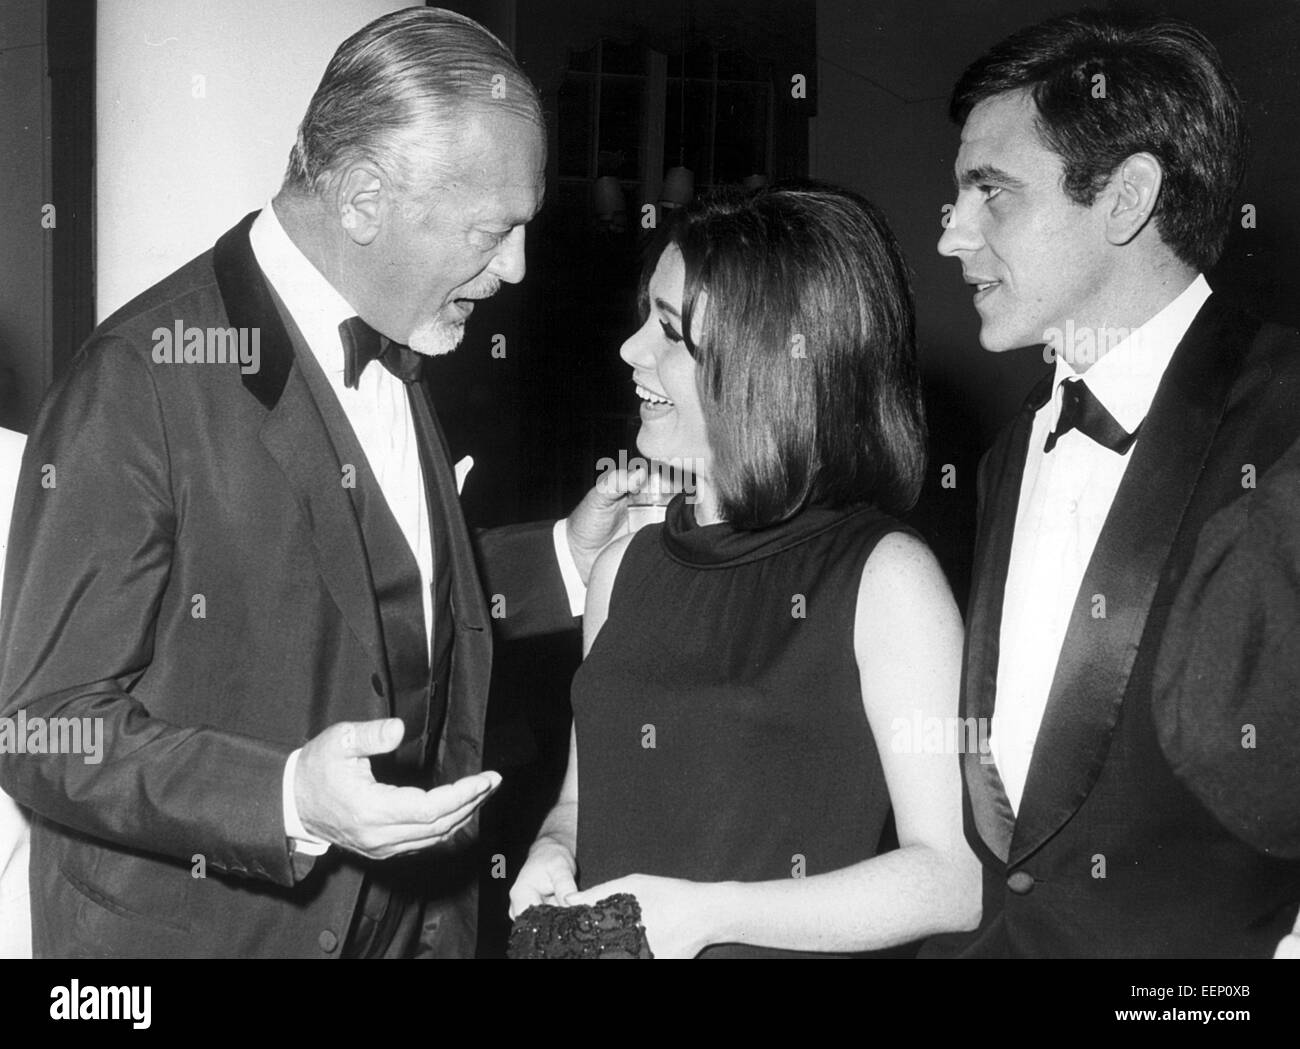 L'acteur Curd Juergens (l) parle d'acteurs argentins Maria-Cristina Laurenz (M) et Hector Pelligrini (r) au cours de la Berlinale le 30 juin en 1965. Banque D'Images